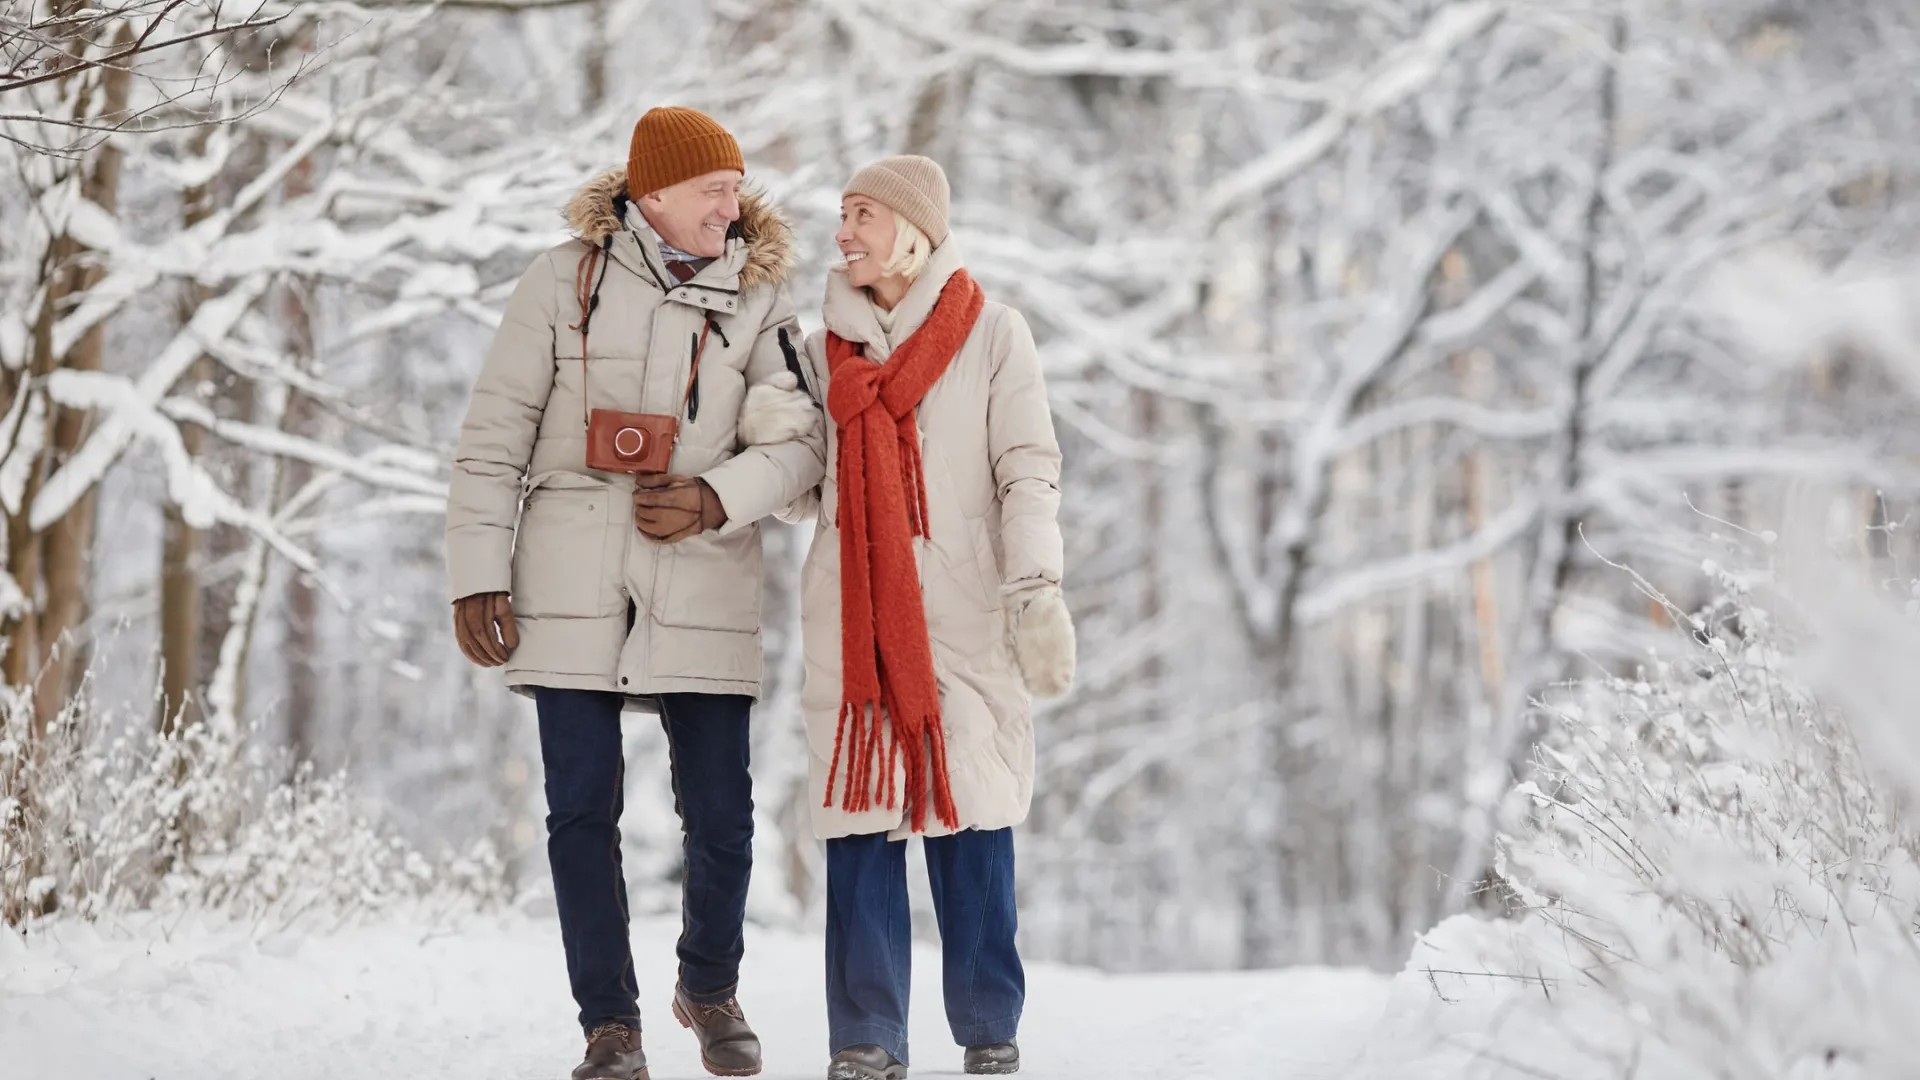 Ямальским пенсионерам увеличат компенсацию расходов на отдых. / Фото: SeventyFour/Shutterstock/Fotodom